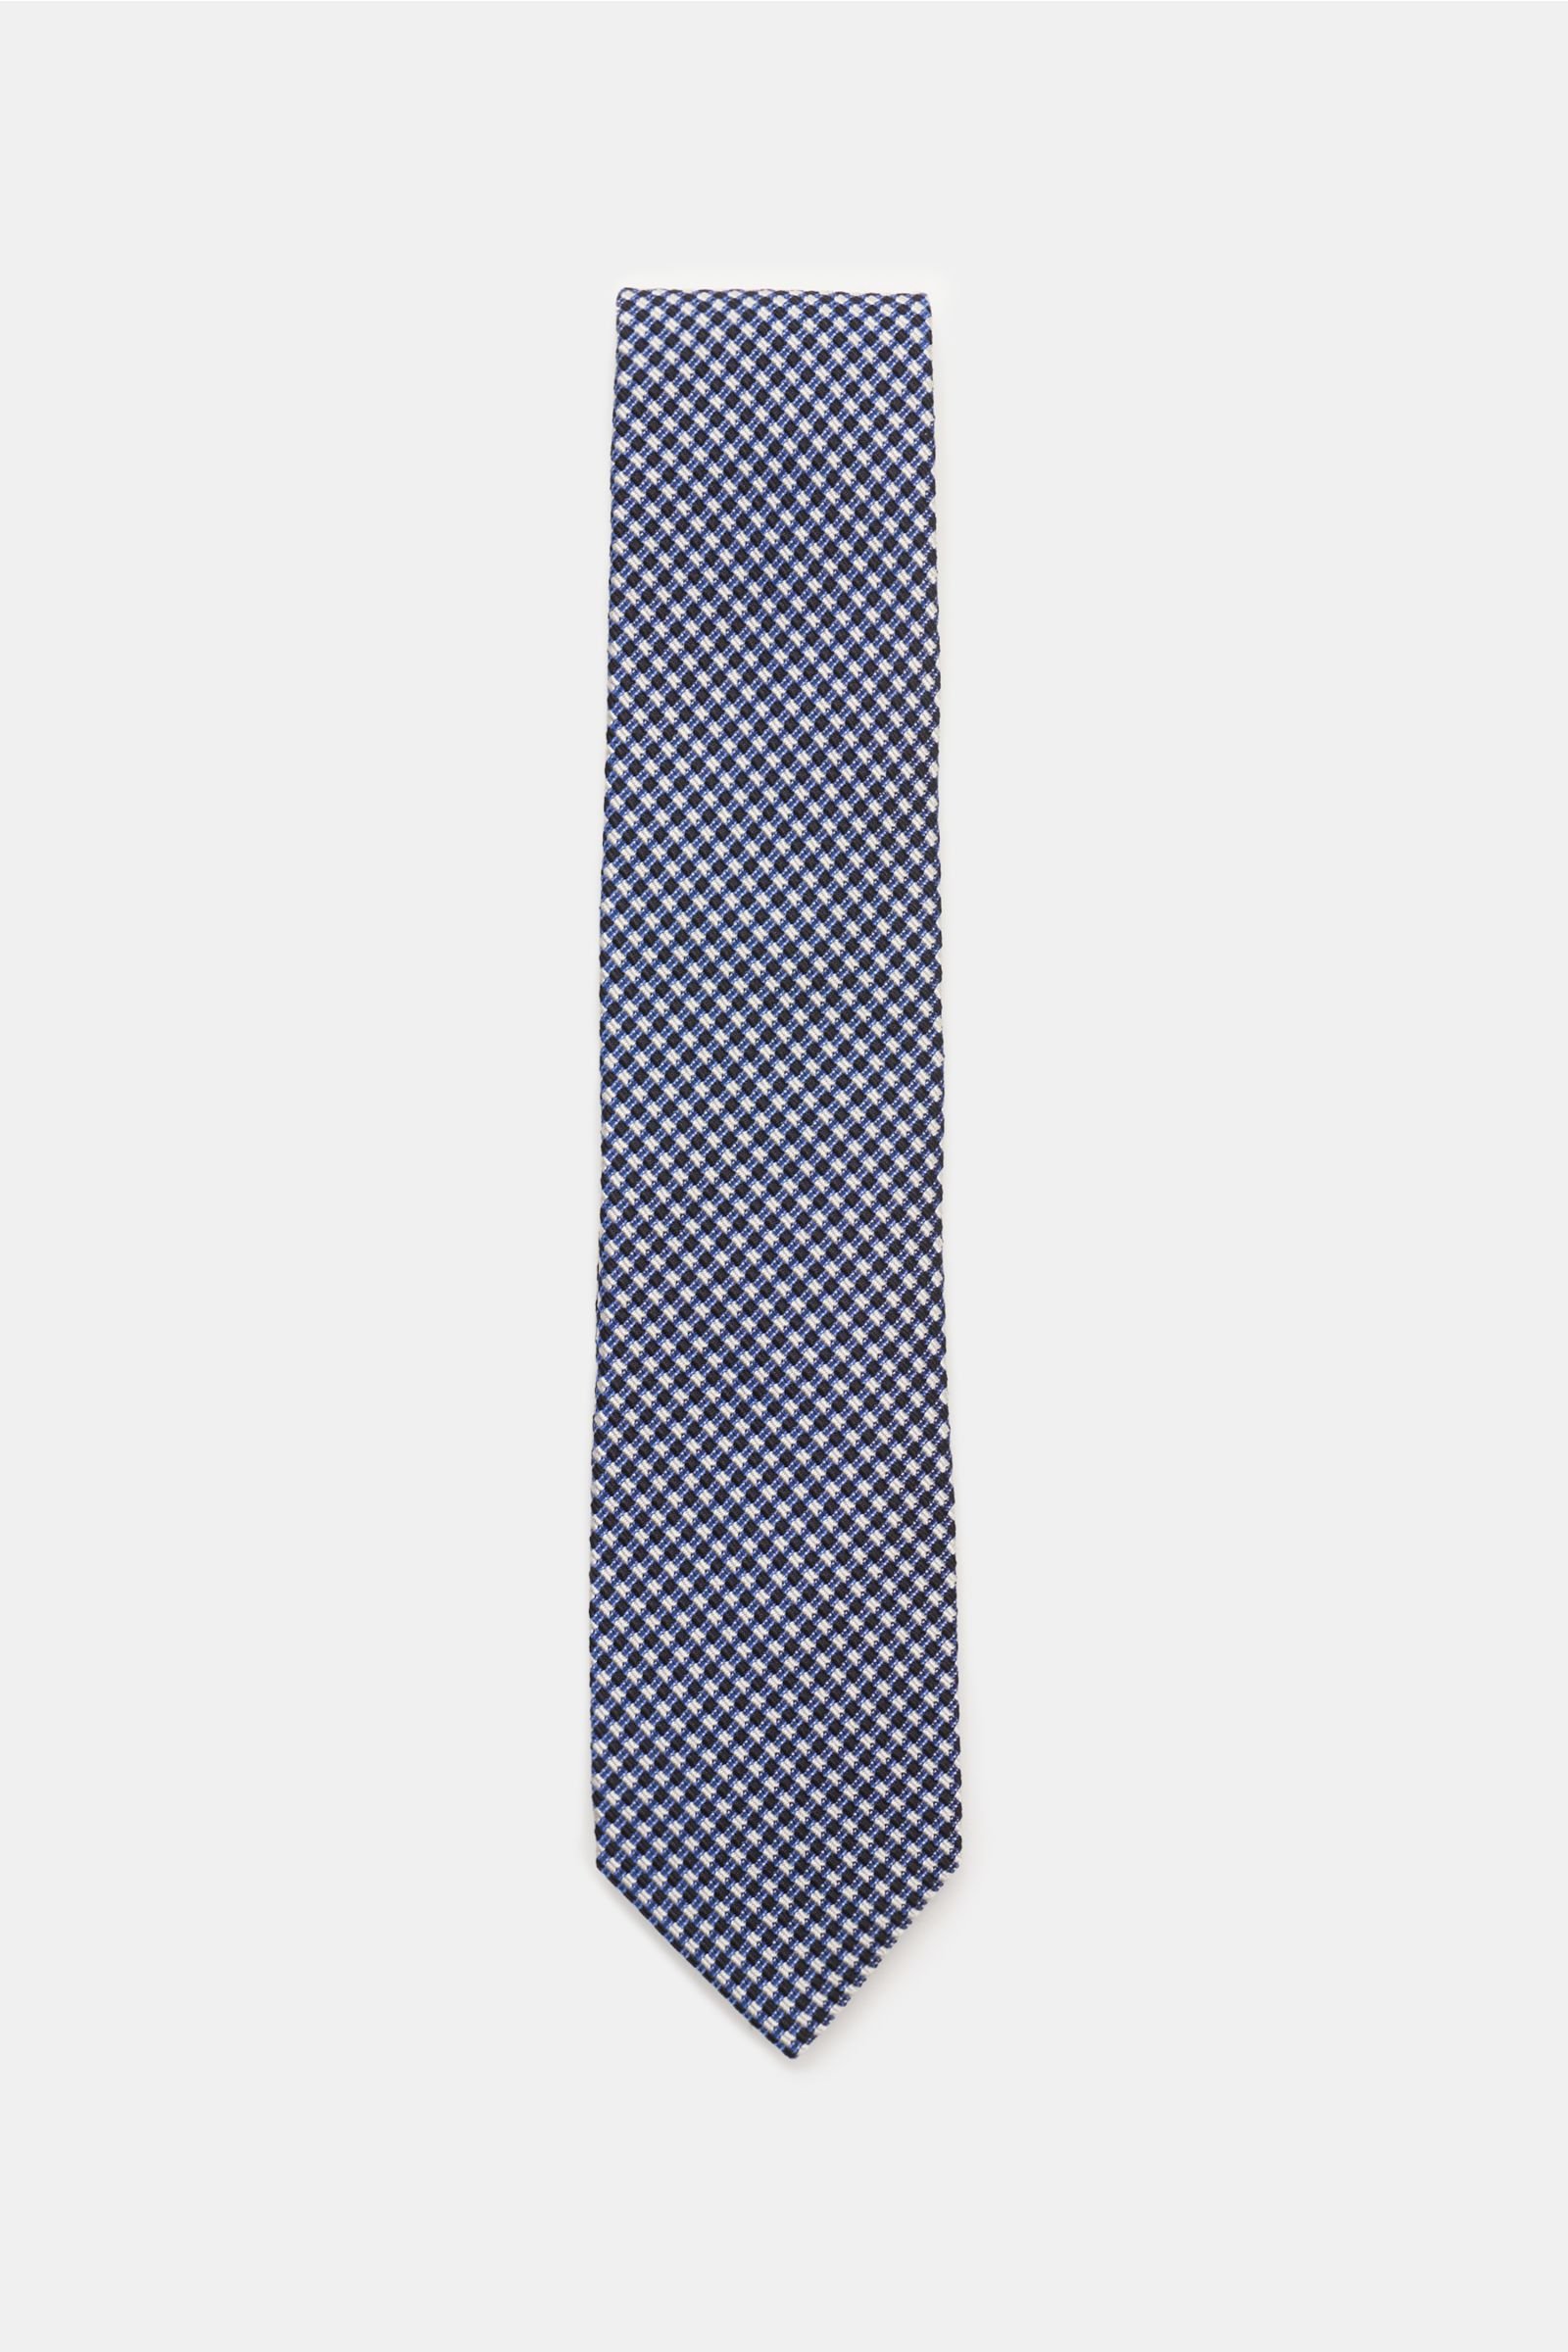 Tie dark blue/off-white checked